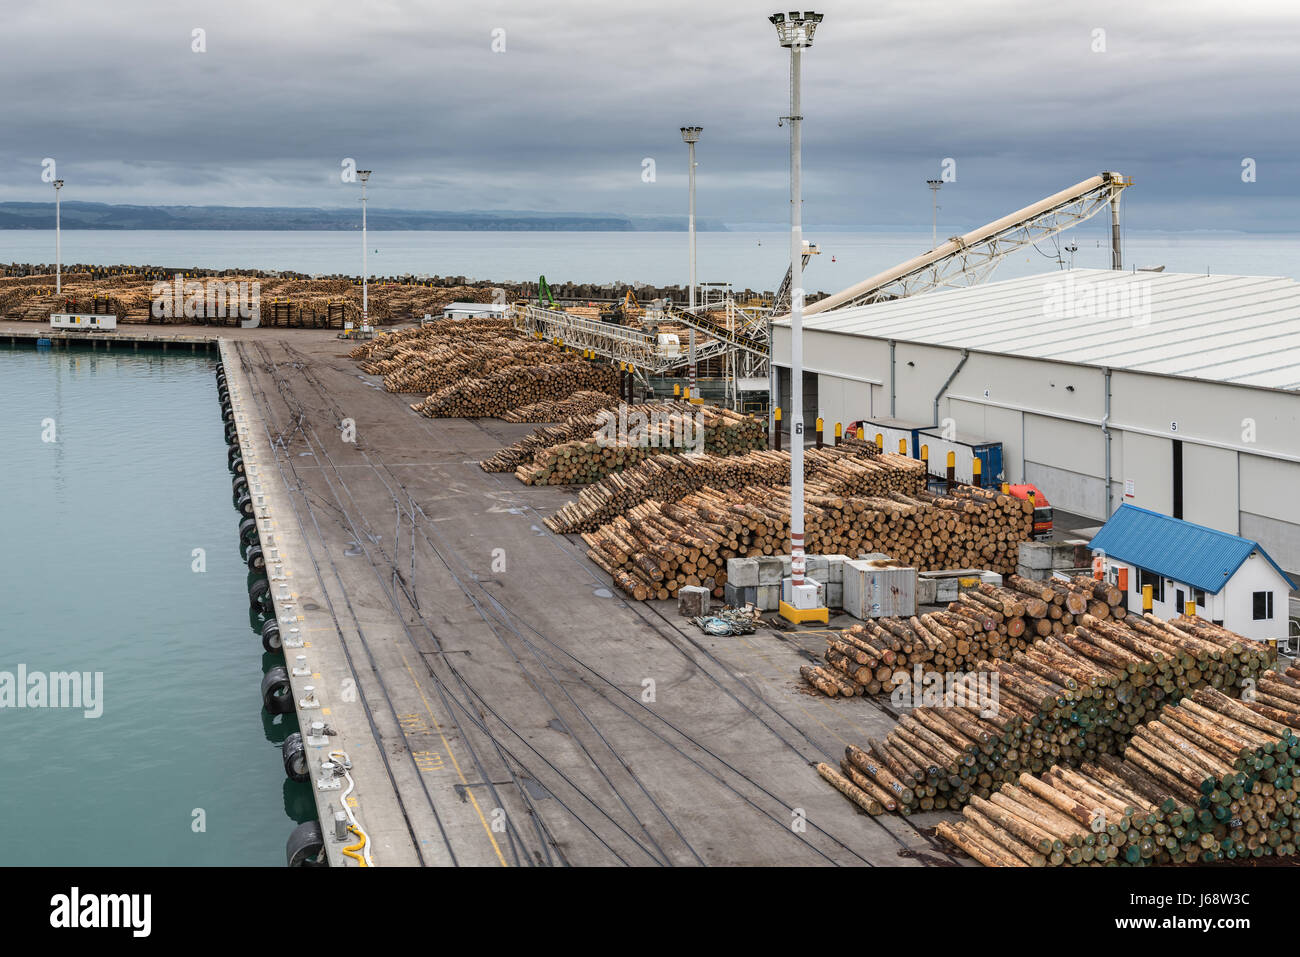 Napier, Neuseeland - 9. März 2017: Übersicht der Teil des großen Holz Hafen unter bewölktem Himmel. Jede Menge braune Baumstämmen gesägt auf Fixlänge. Pacif Stockfoto